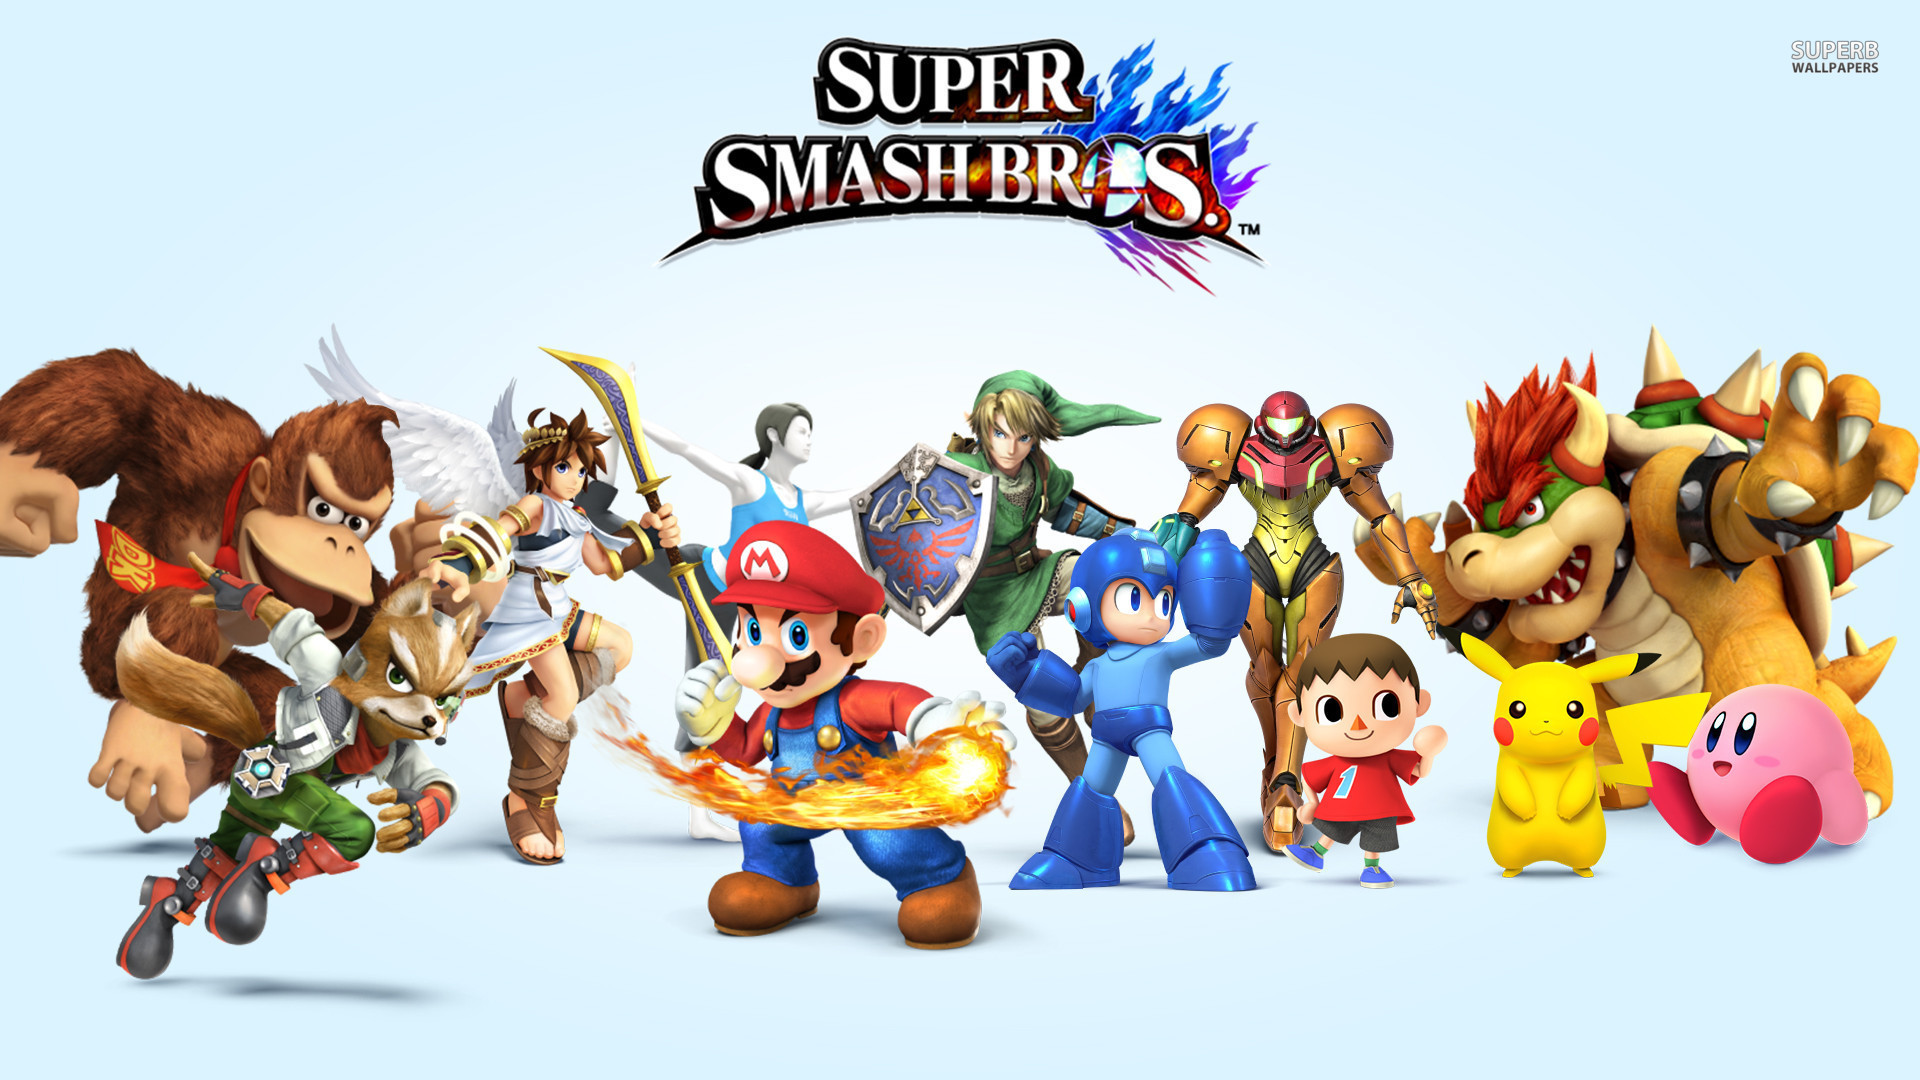 Super Smash Bros. 4 Backgrounds, Compatible - PC, Mobile, Gadgets| 1920x1080 px